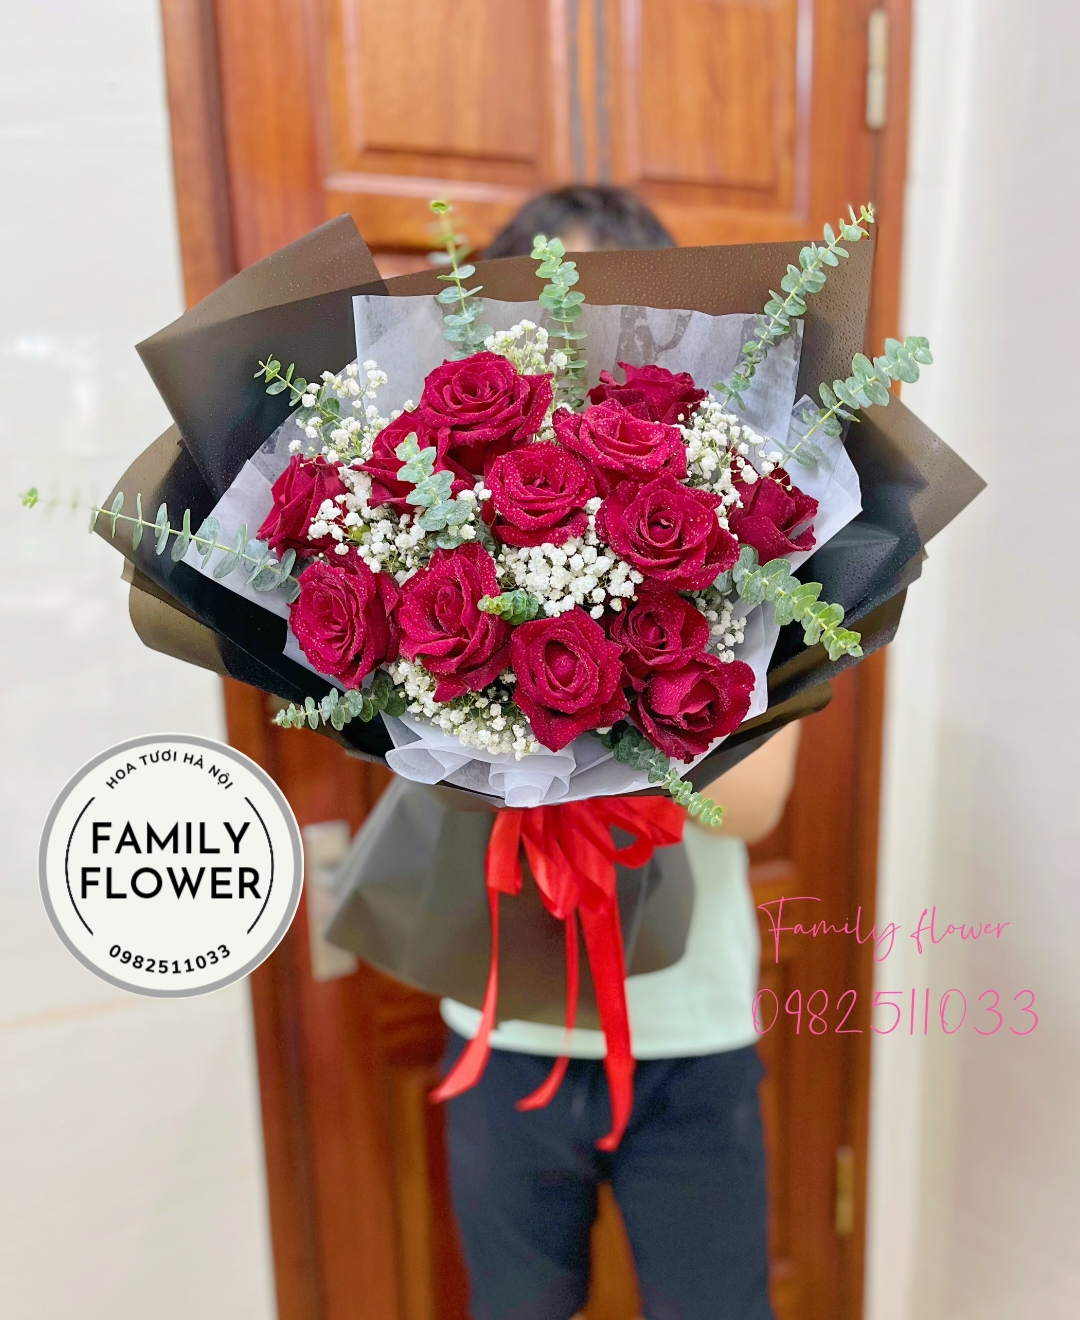 Mua hoa tặng vợ ! Bó hoa hồng đỏ tặng người yêu ở quận Ba Đình , Cầu Giấy Hà Nội 